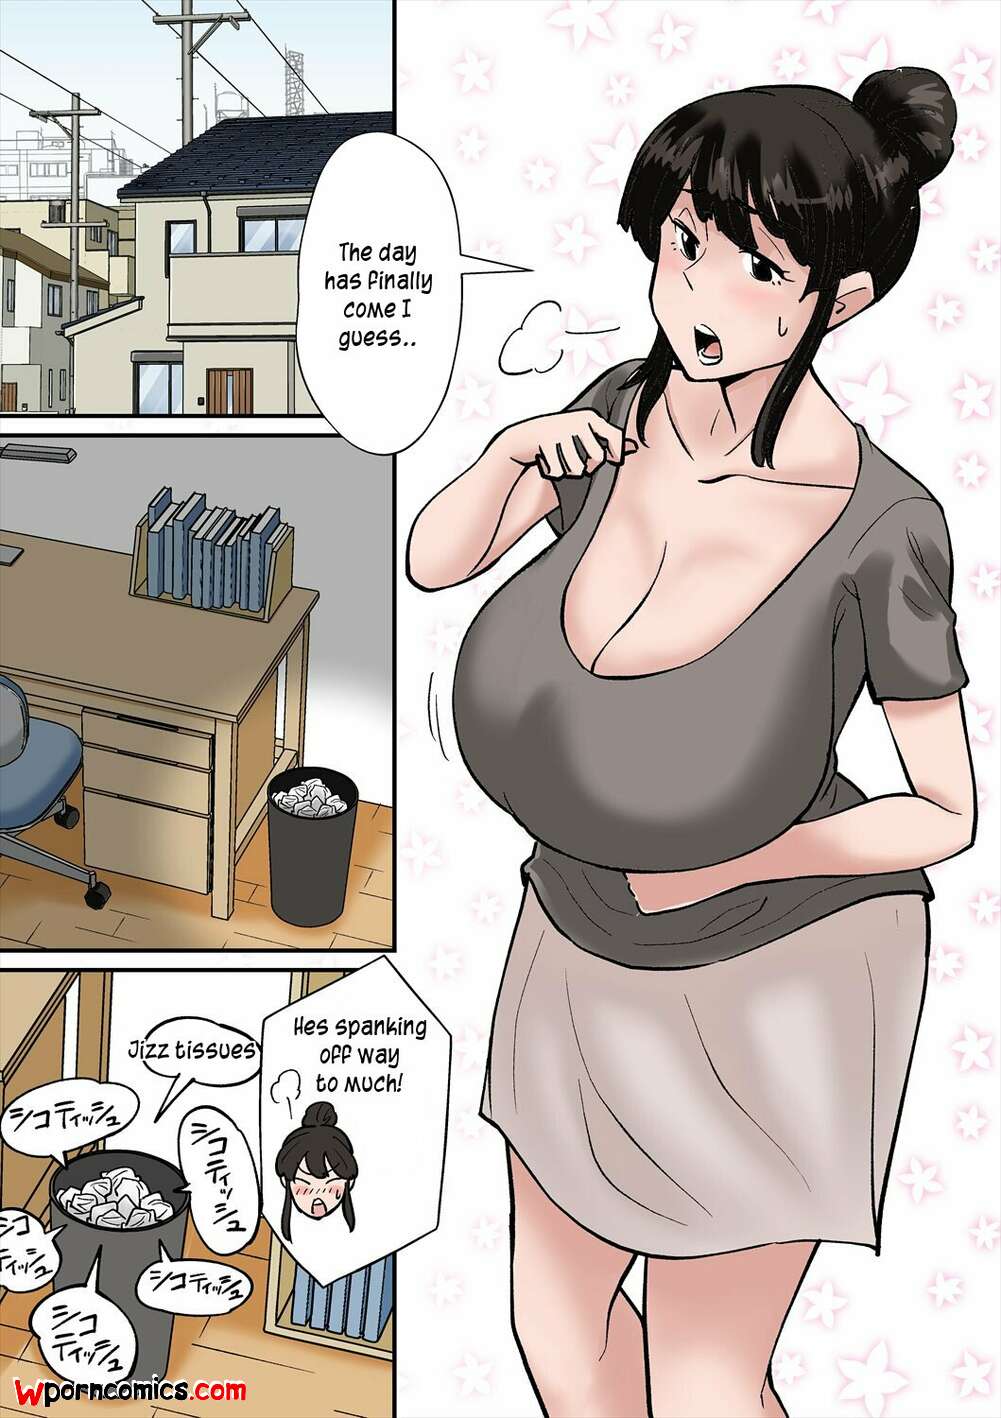 Nobishiro porn comics